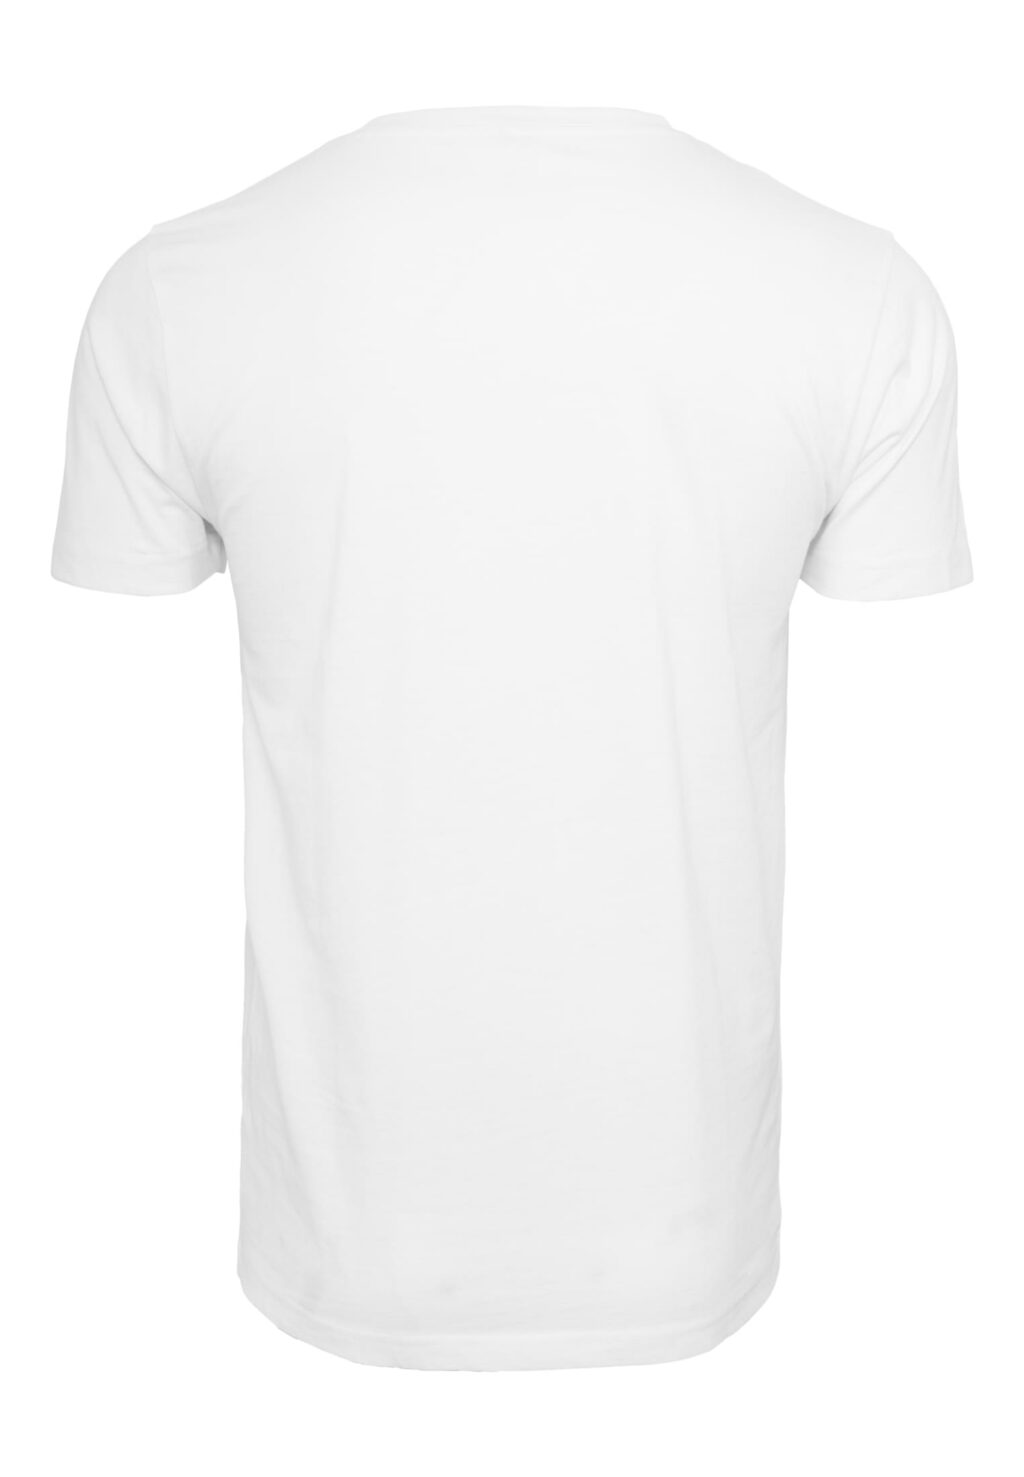 Know My Steez Tee T-Shirt Round Neck white MT2392